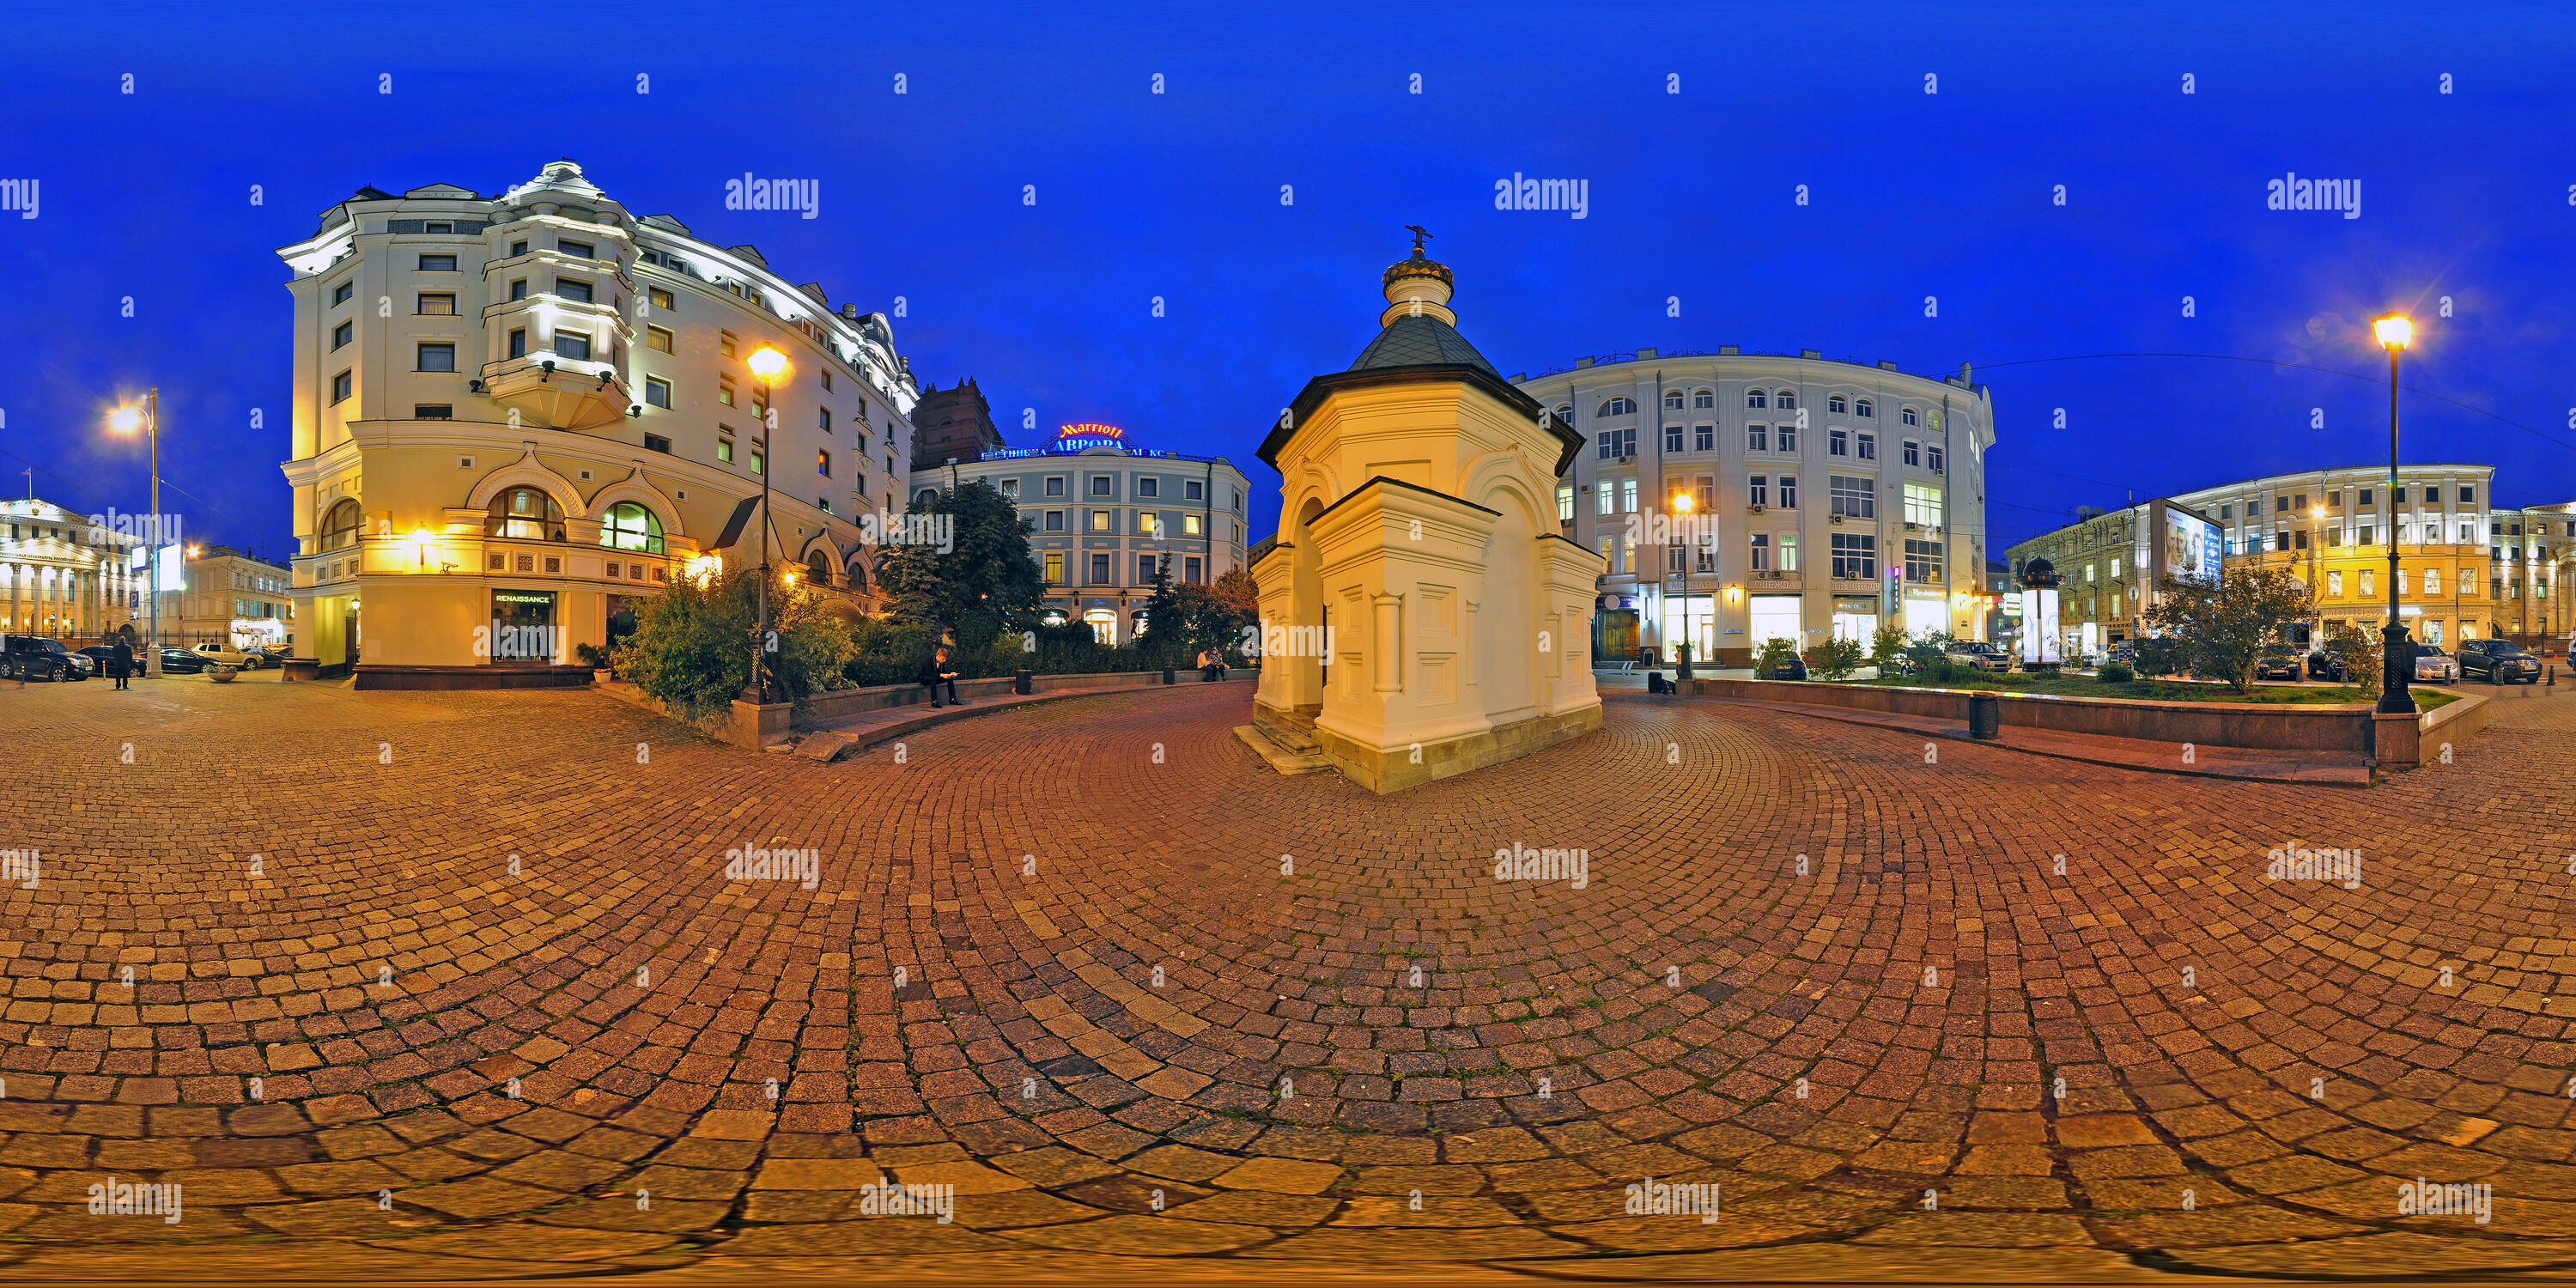 Visualizzazione panoramica a 360 gradi di Hotel Aurora - via Petrovka - Mosca